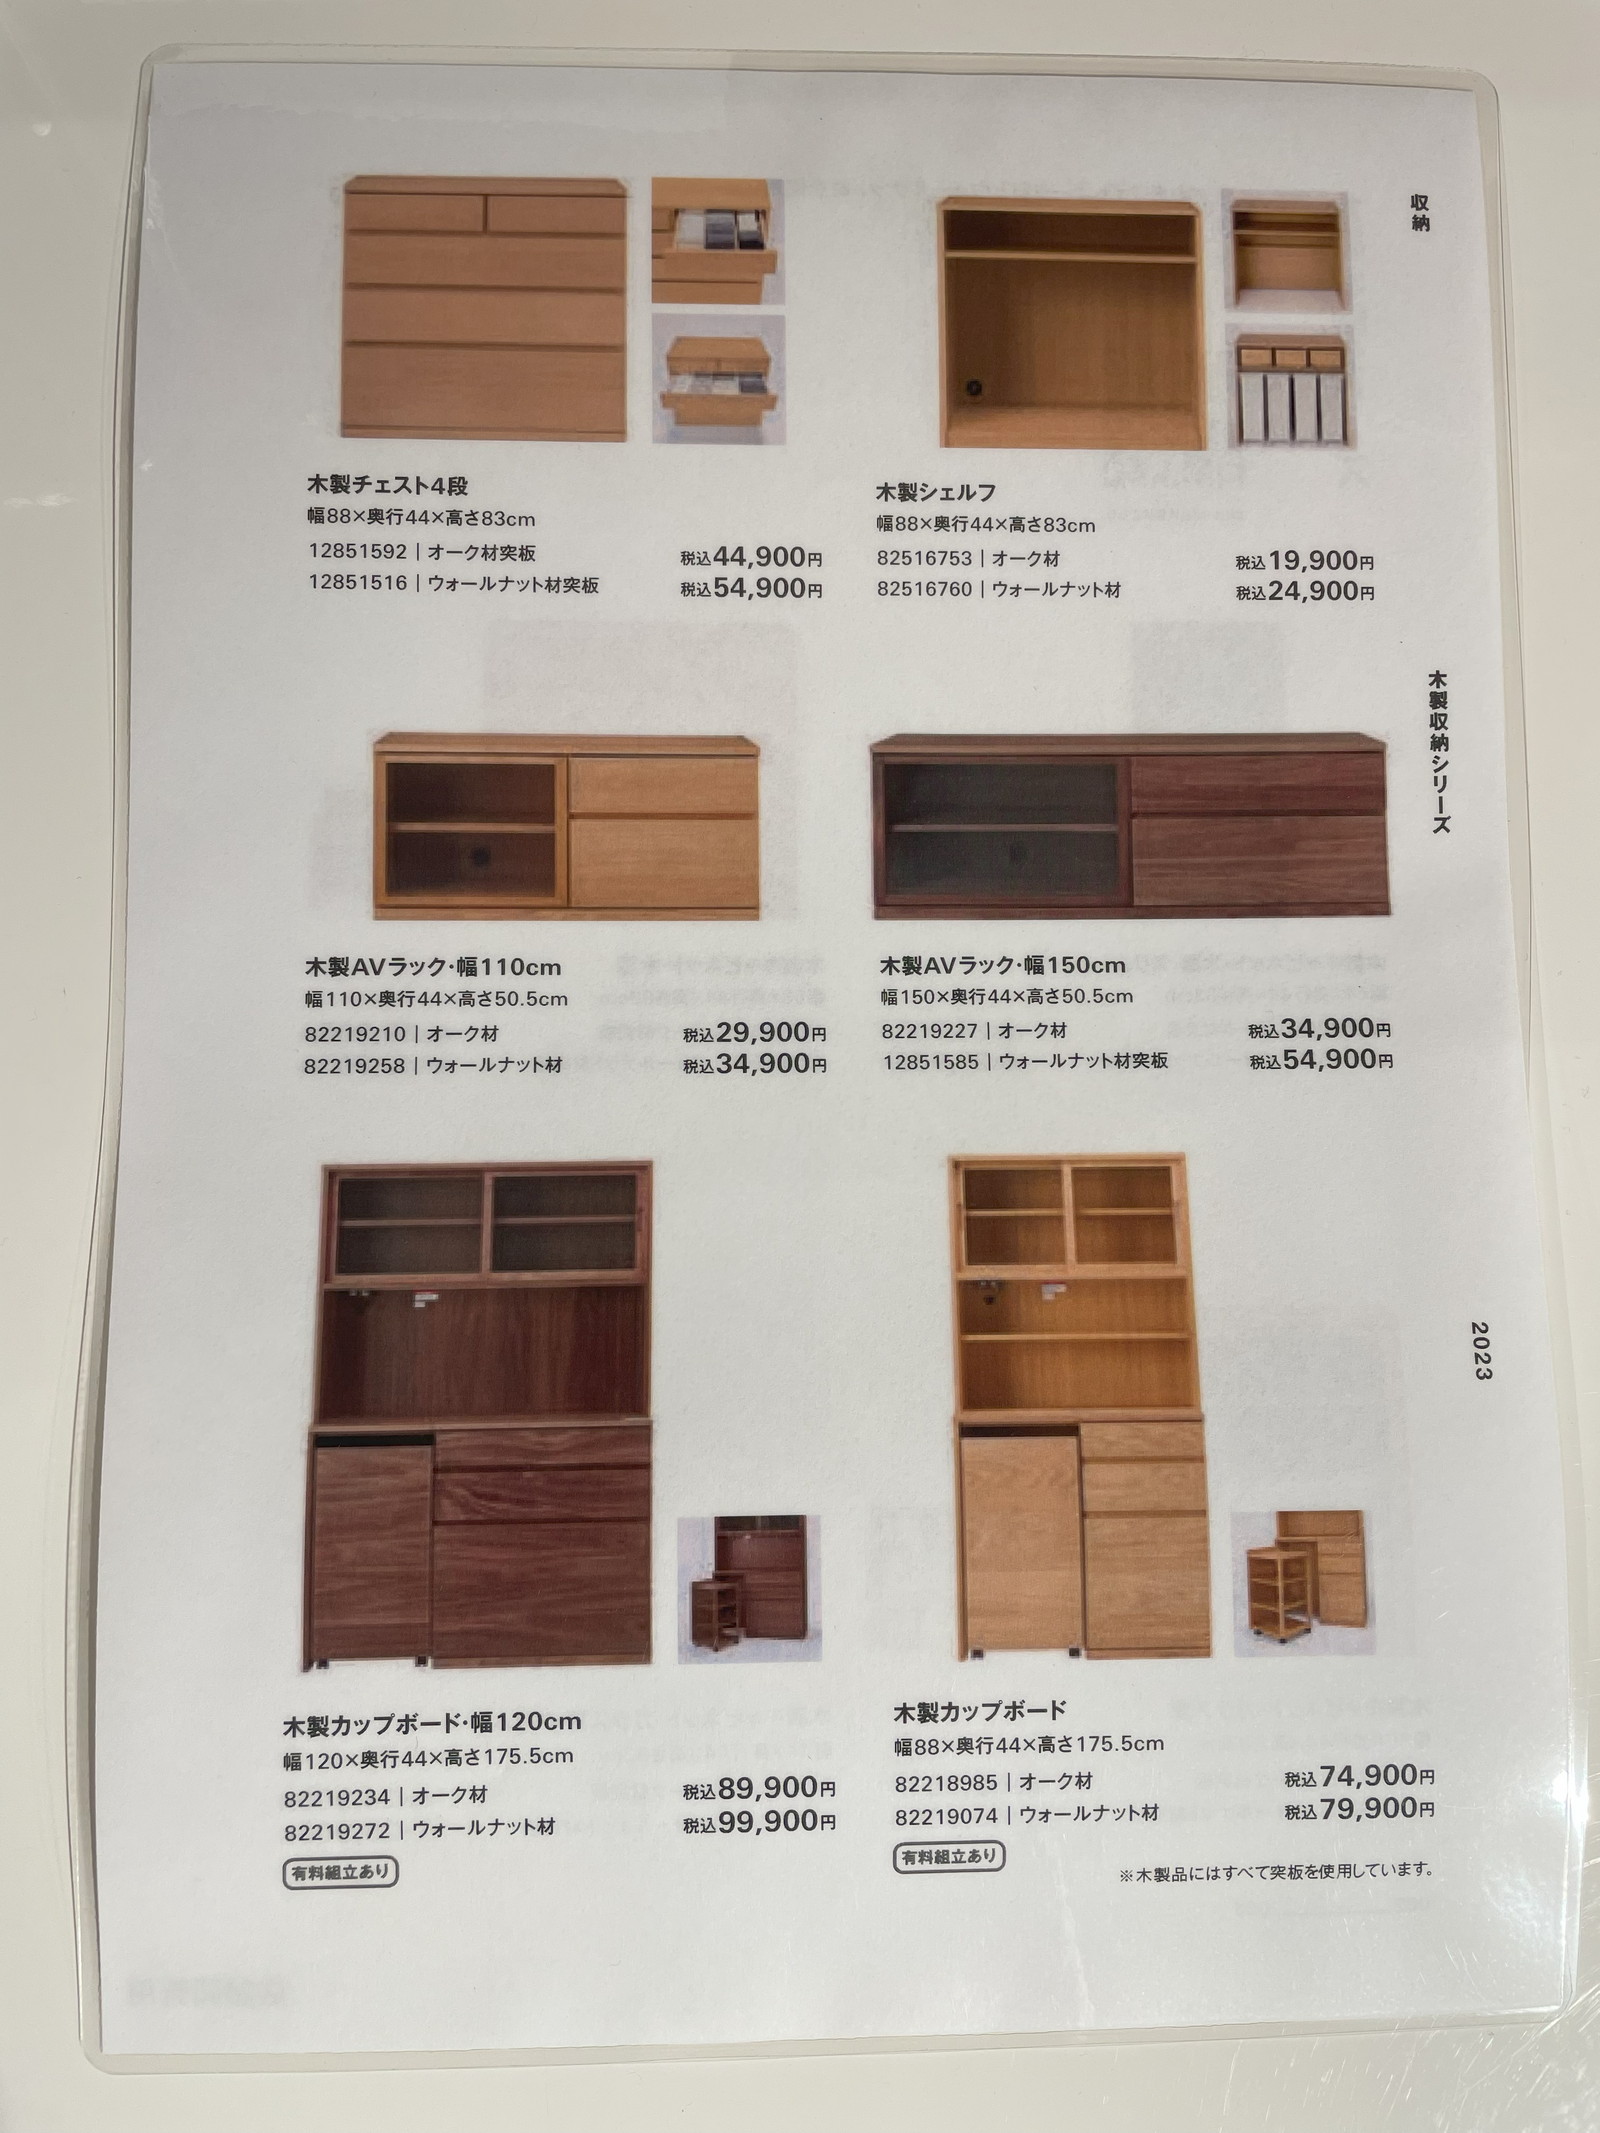 無印良品の木製収納家具の価格表